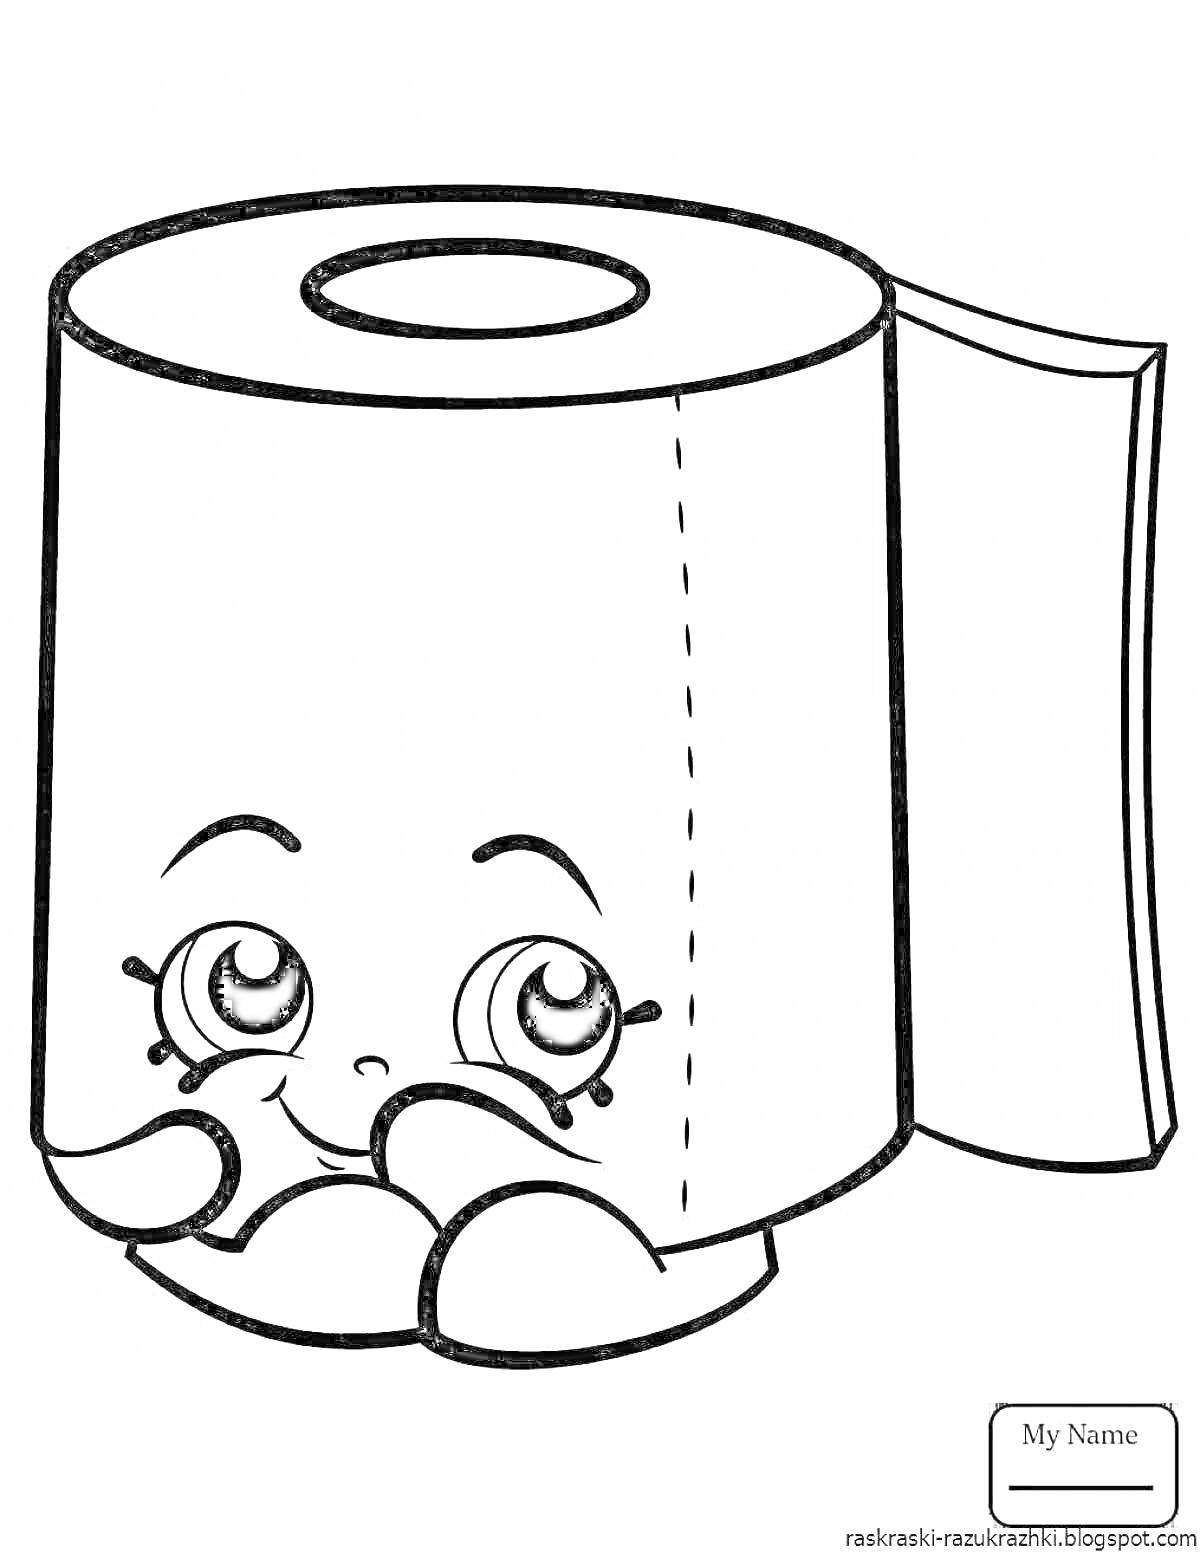 Раскраска Рулон туалетной бумаги с глазами, руками и улыбкой